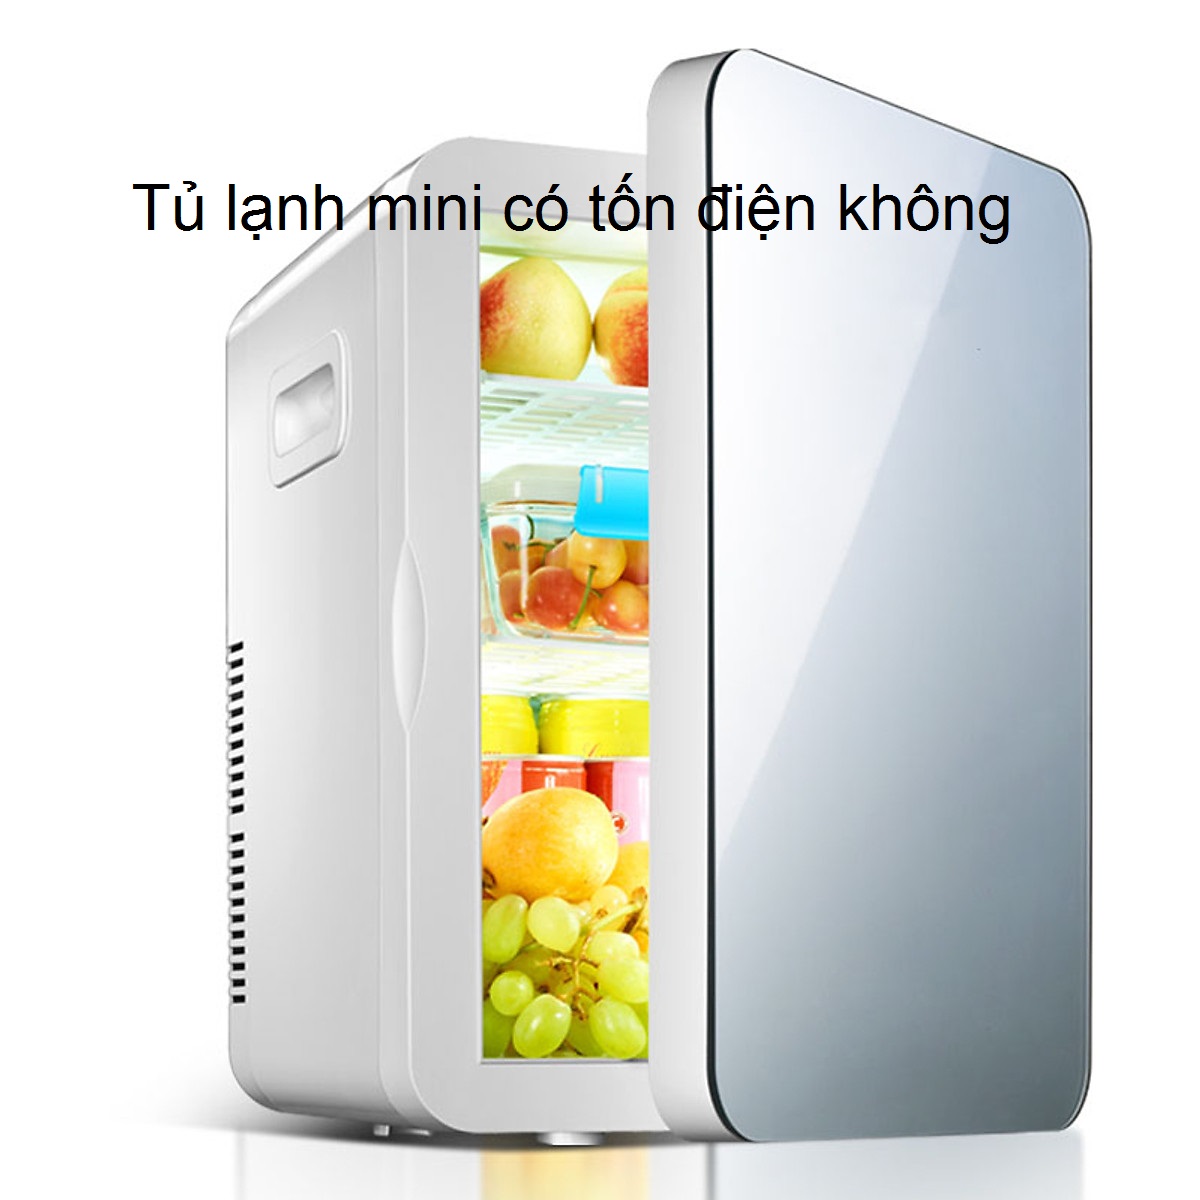 [Giải đáp] Tủ lạnh mini có tốn điện không? 1 tháng hết bao nhiêu tiền điện?